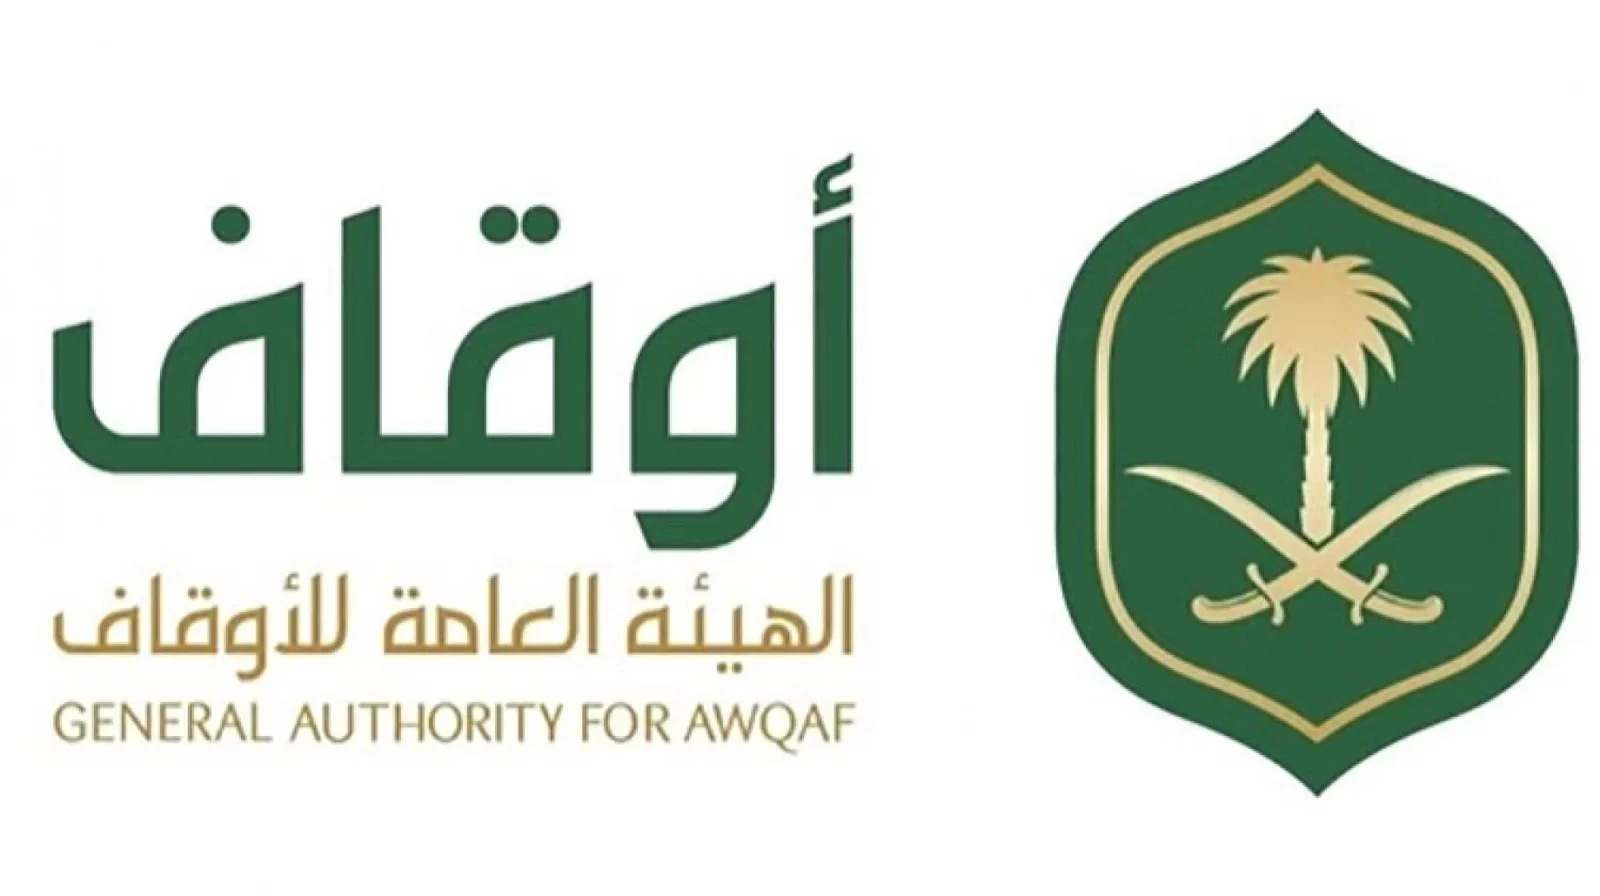 الهيئة العامة للأوقاف السعودية والتسجيل في مبادرة توطين برنامج الإدارة الفندقية لحديثي التخرج - وظائف الهيئة العامة للأوقاف السعودية والتسجيل في مبادرة توطين برنامج الإدارة الفندقية لحديثي التخرج